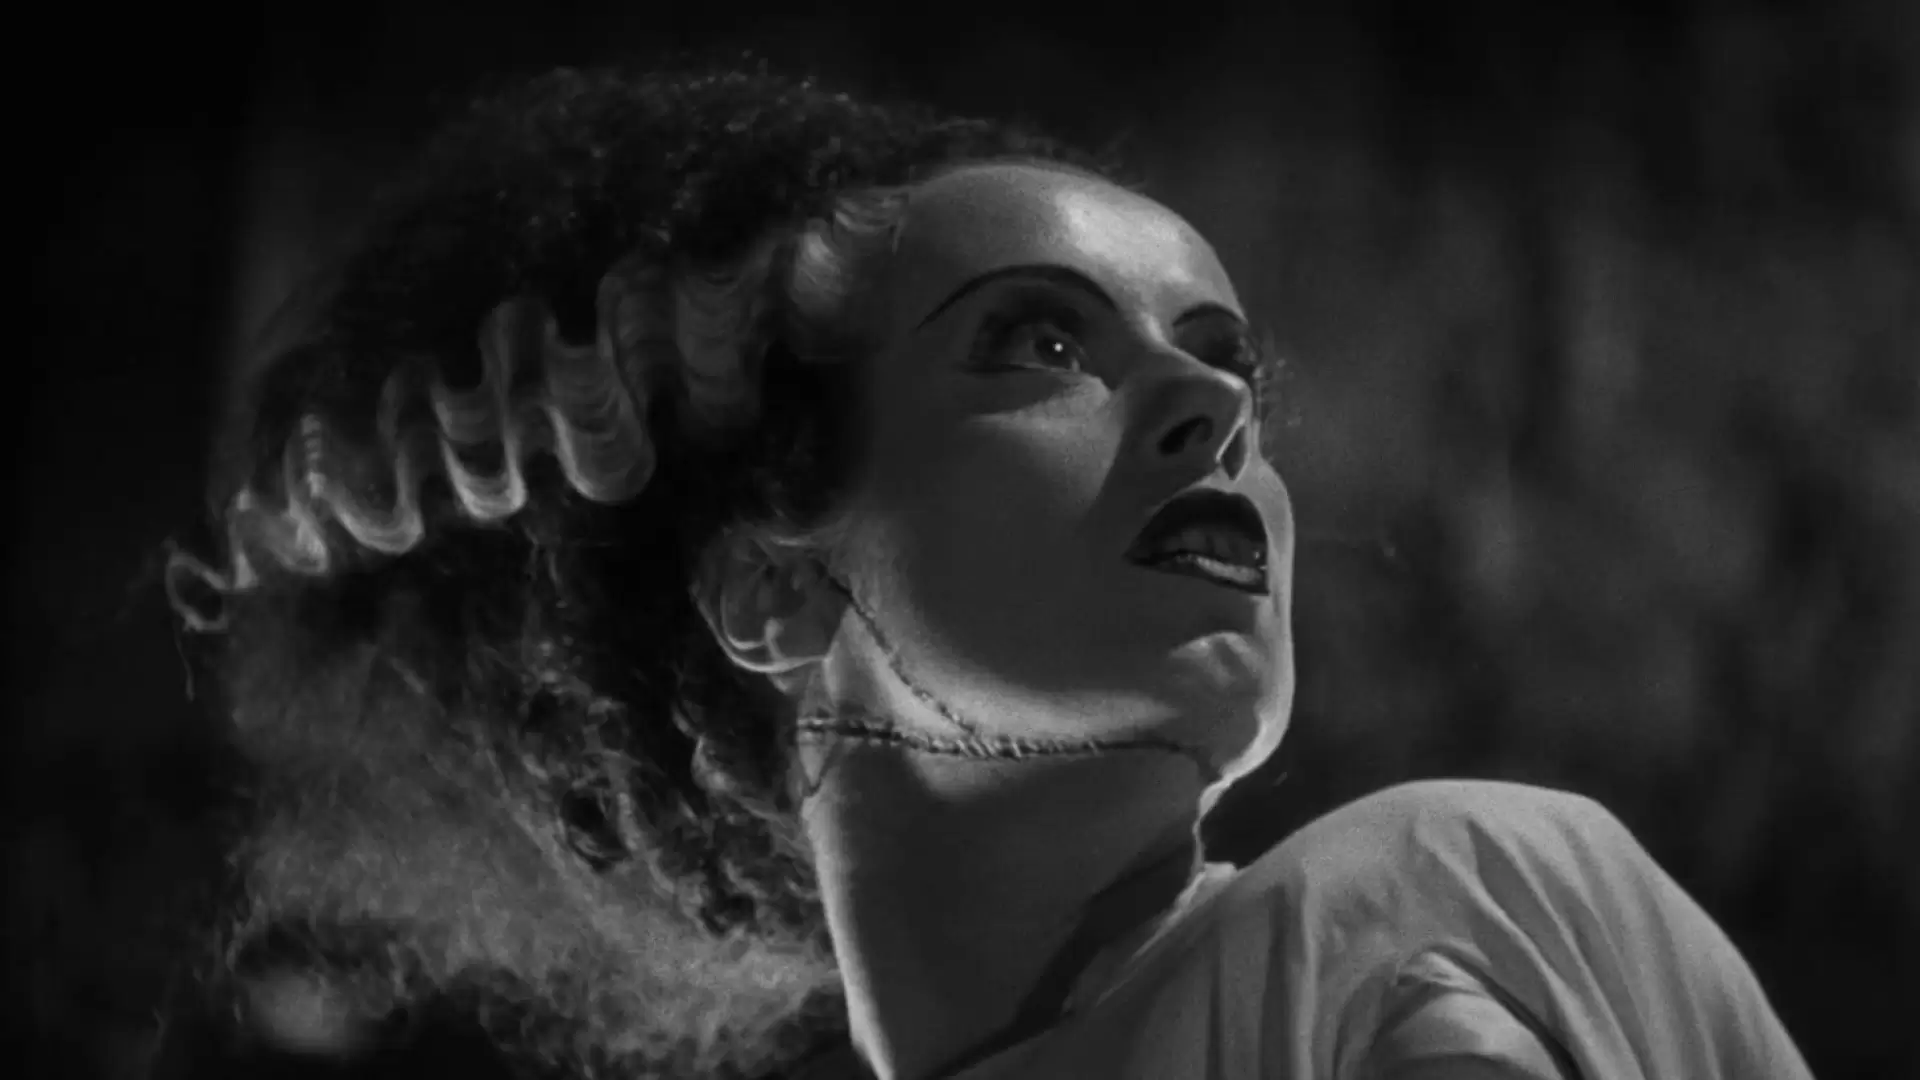 دانلود فیلم Bride of Frankenstein 1935 (عروس فرانکنشتاین) با زیرنویس فارسی و تماشای آنلاین